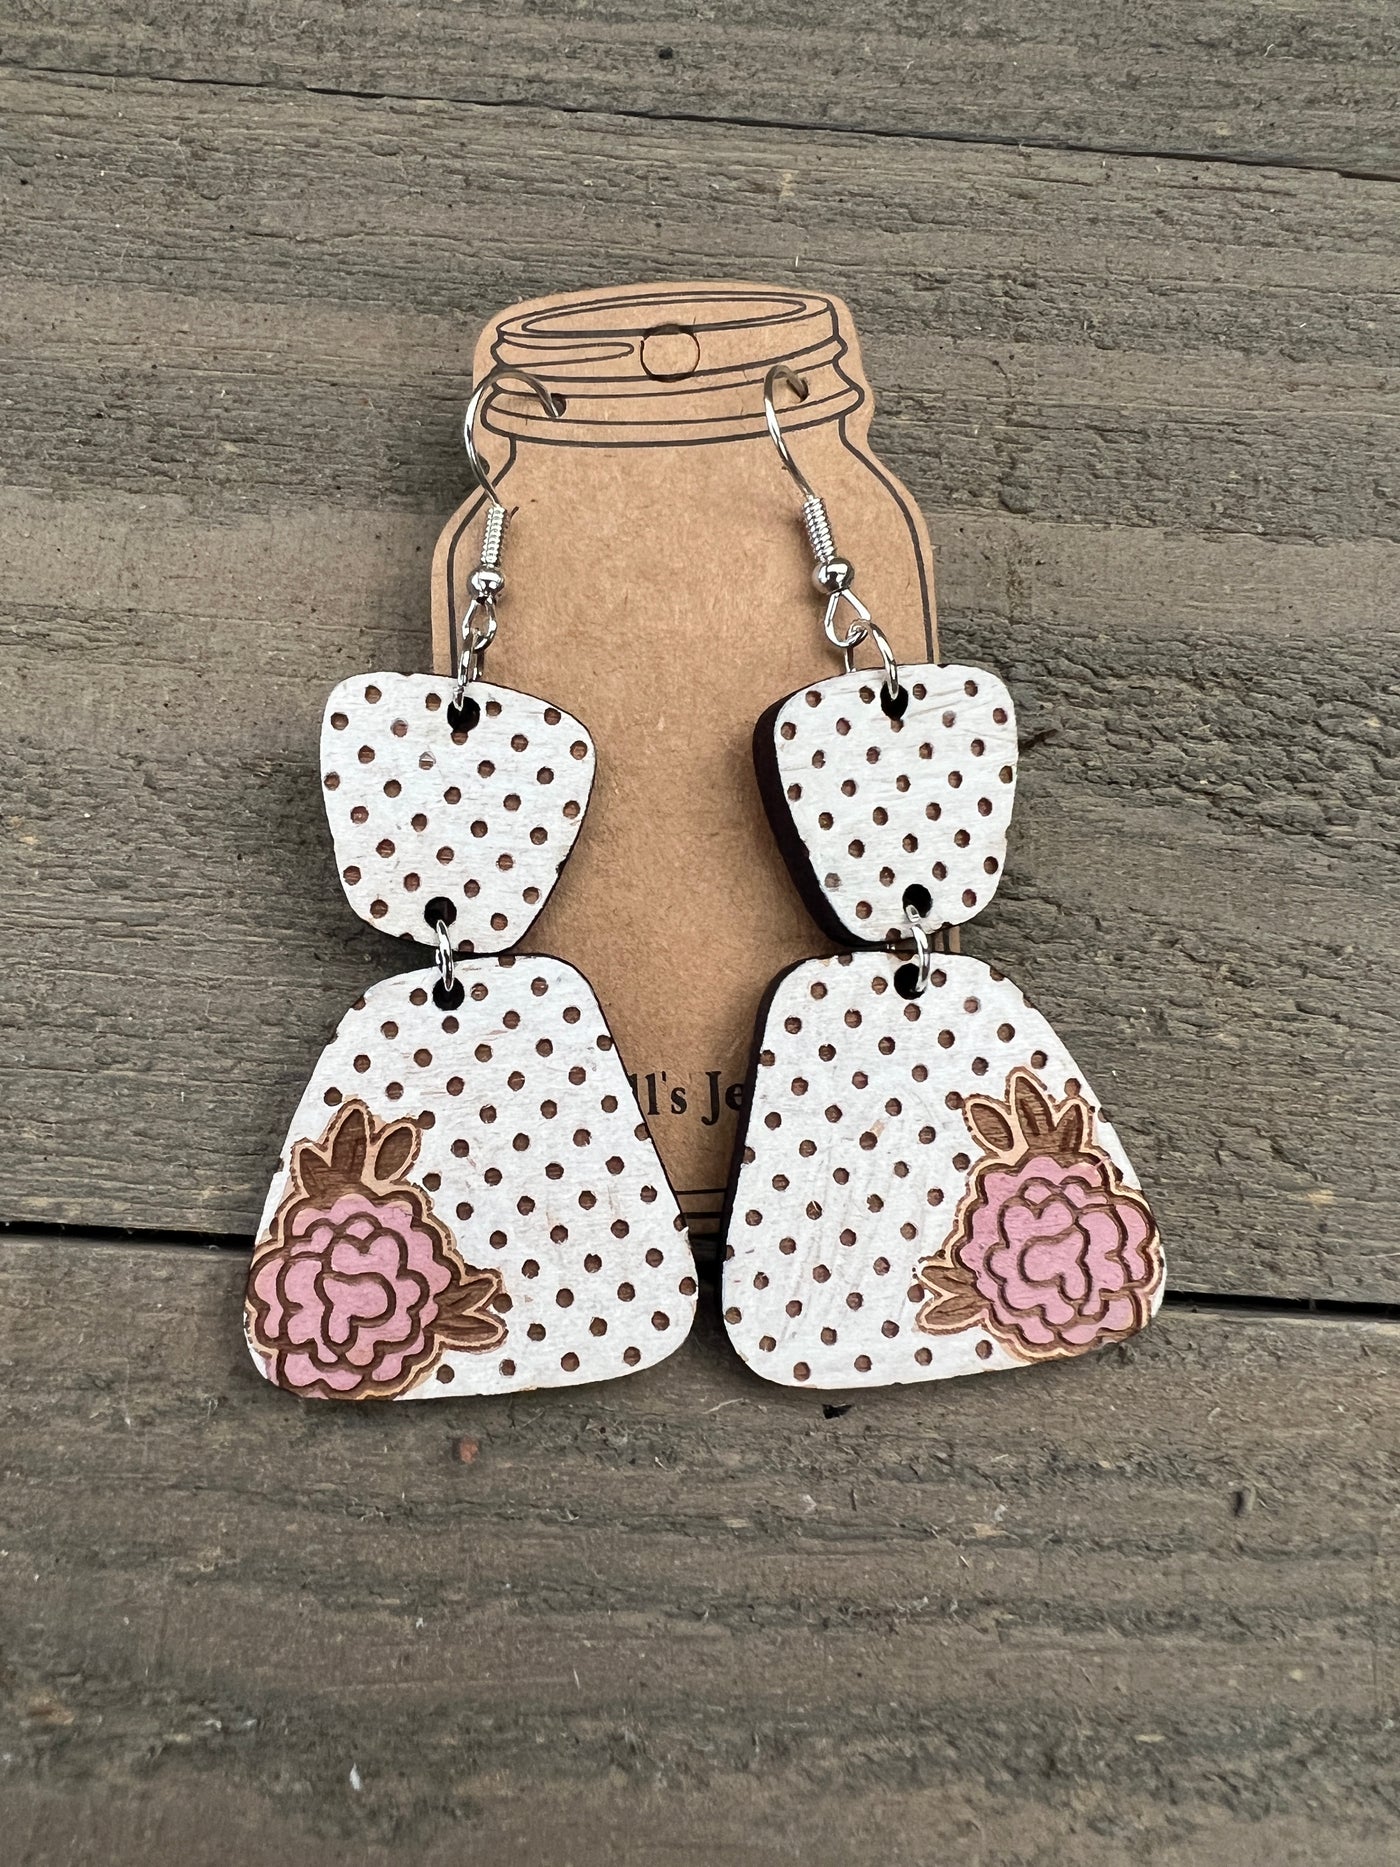 Polka dot Flower Engraved Wooden Earrings